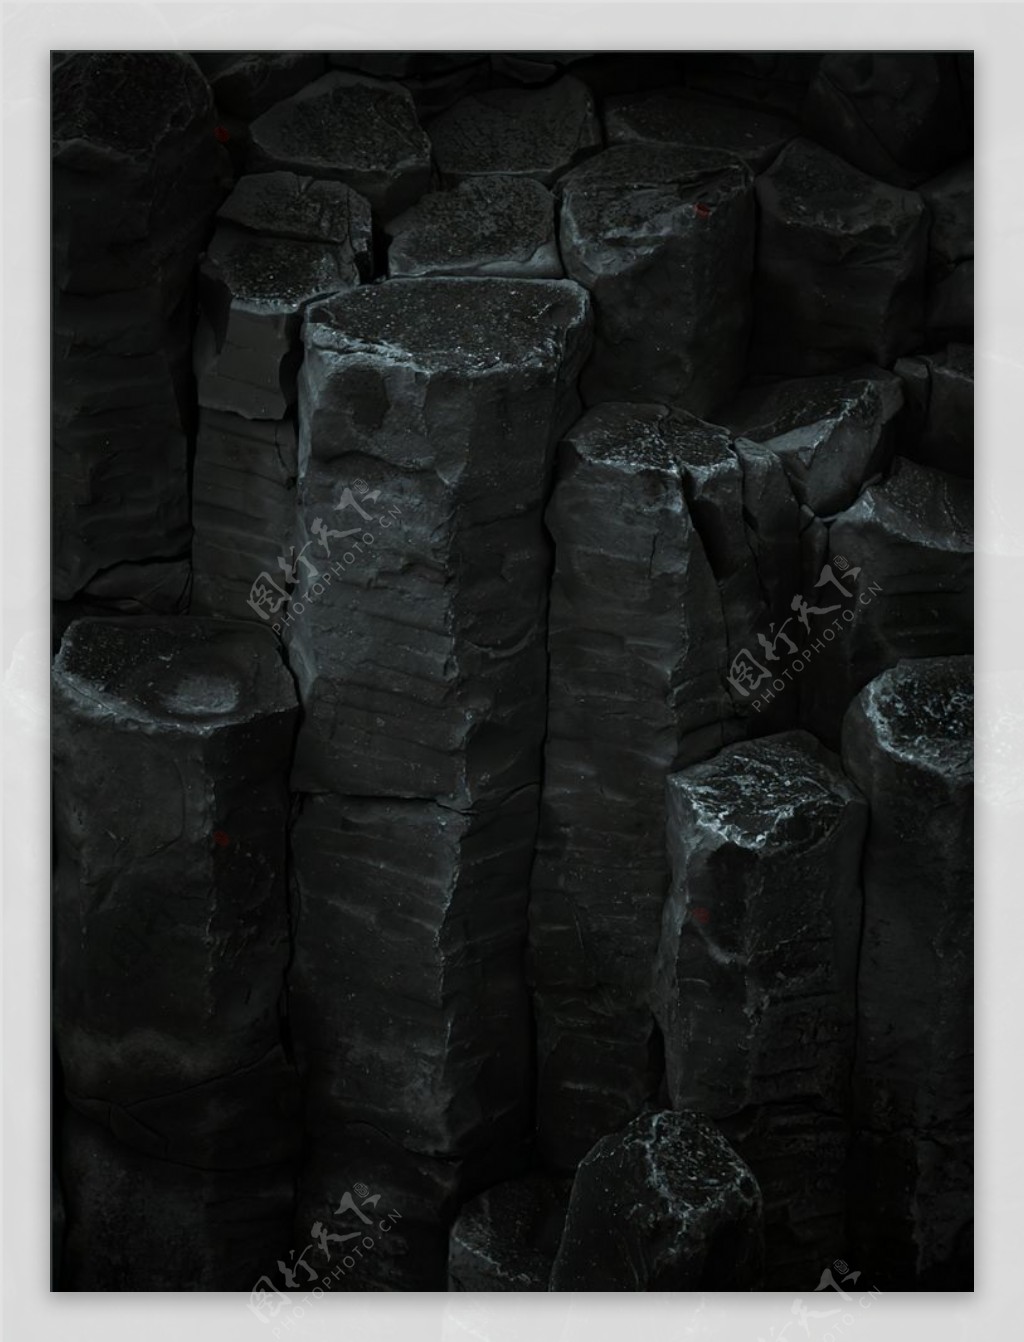 岩石质感纹理黑色背景图片